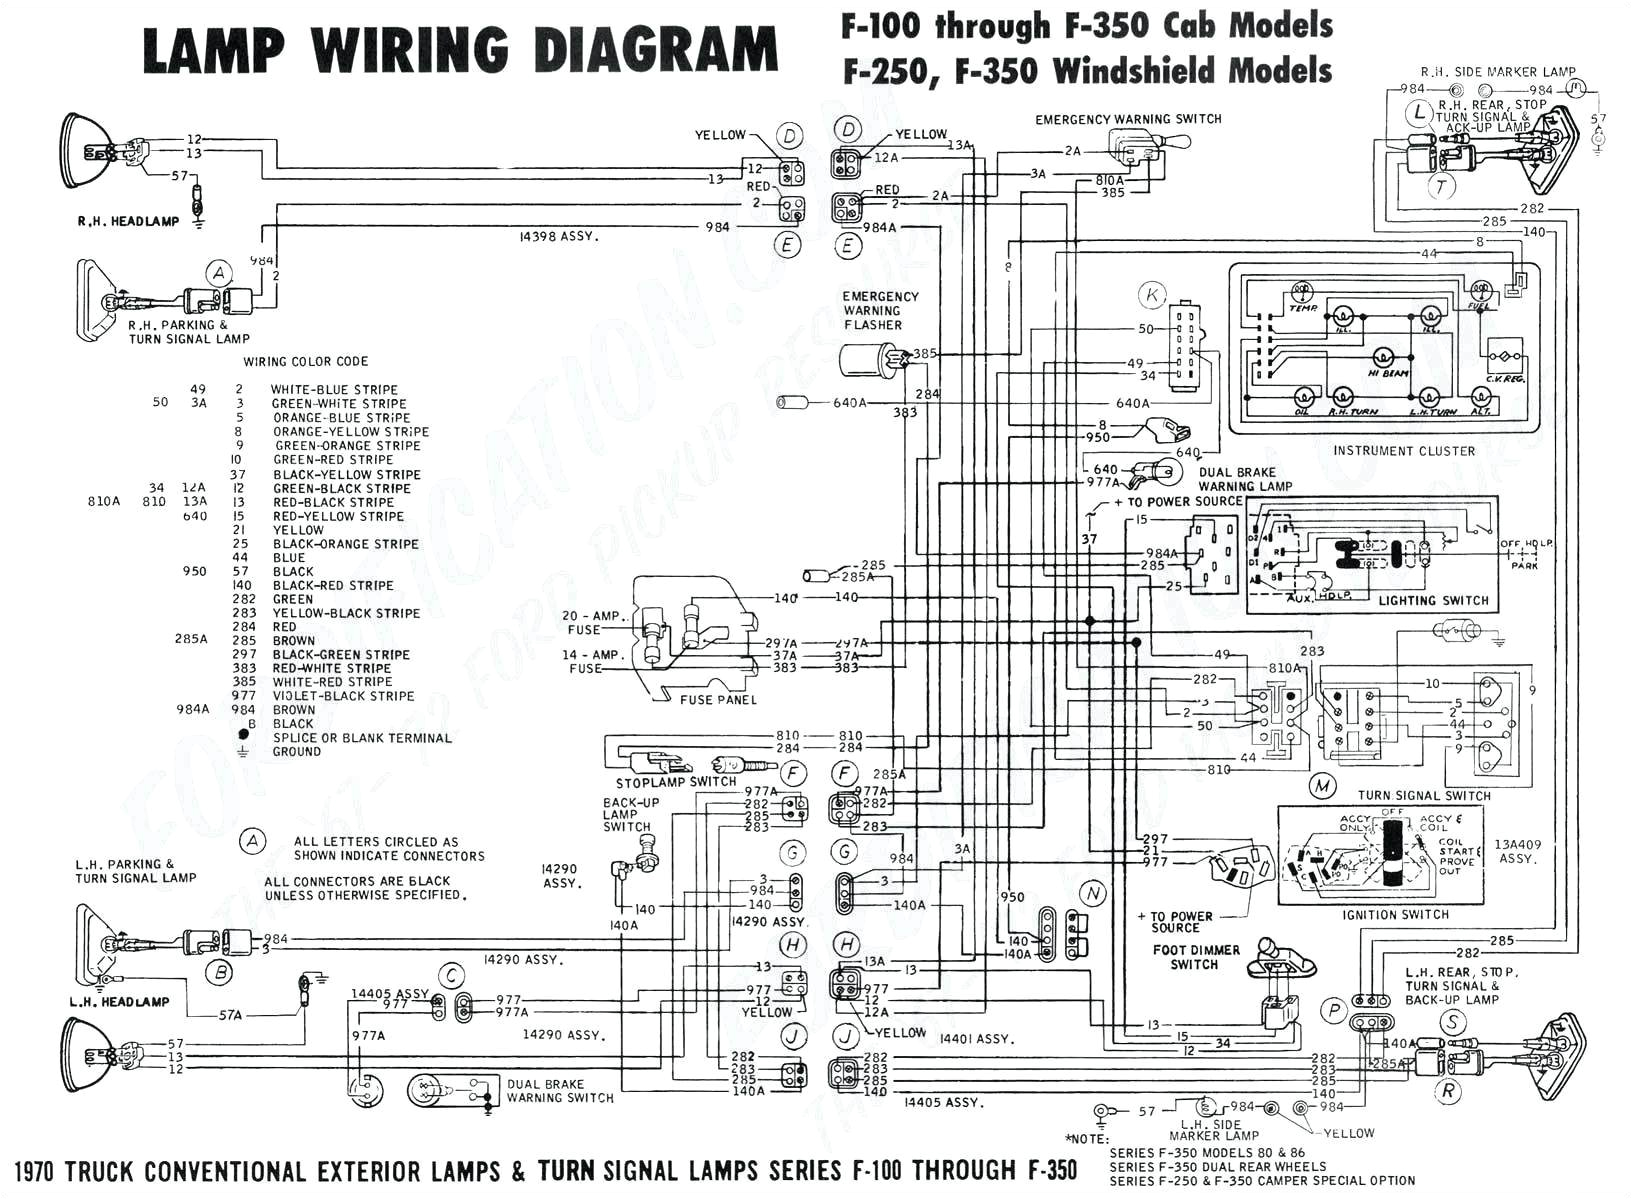 1999 Chevy S10 Fuel Pump Wiring Diagram 84 Cavalier Wiring Diagram Wiring Diagram Schema